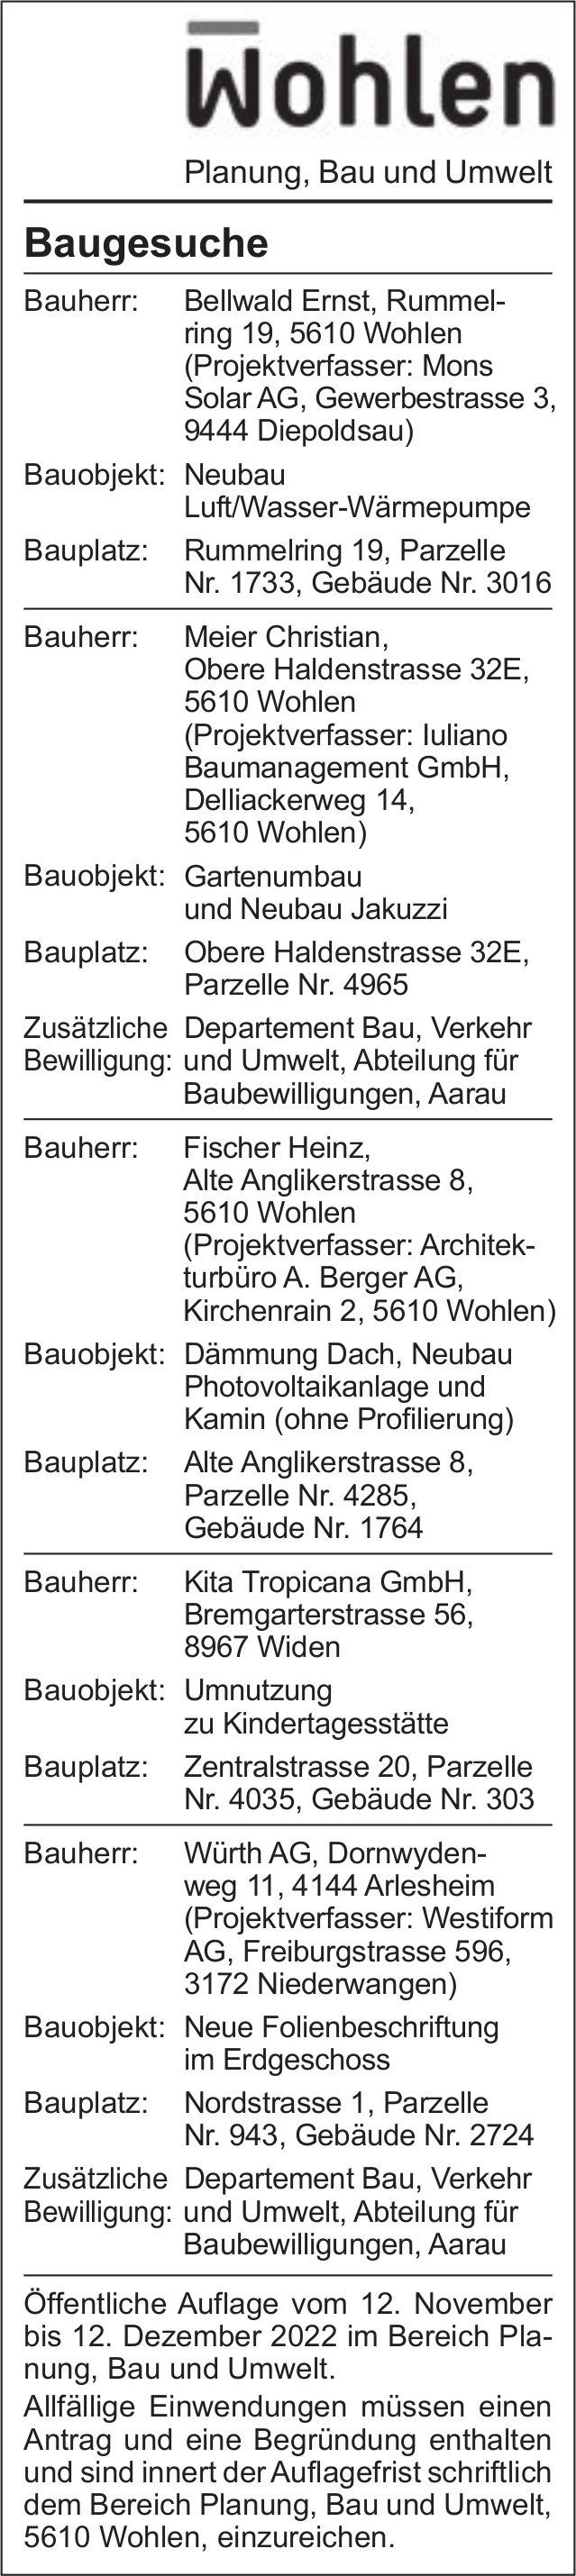 Baugesuche, Wohlen - Bellwald Ernst